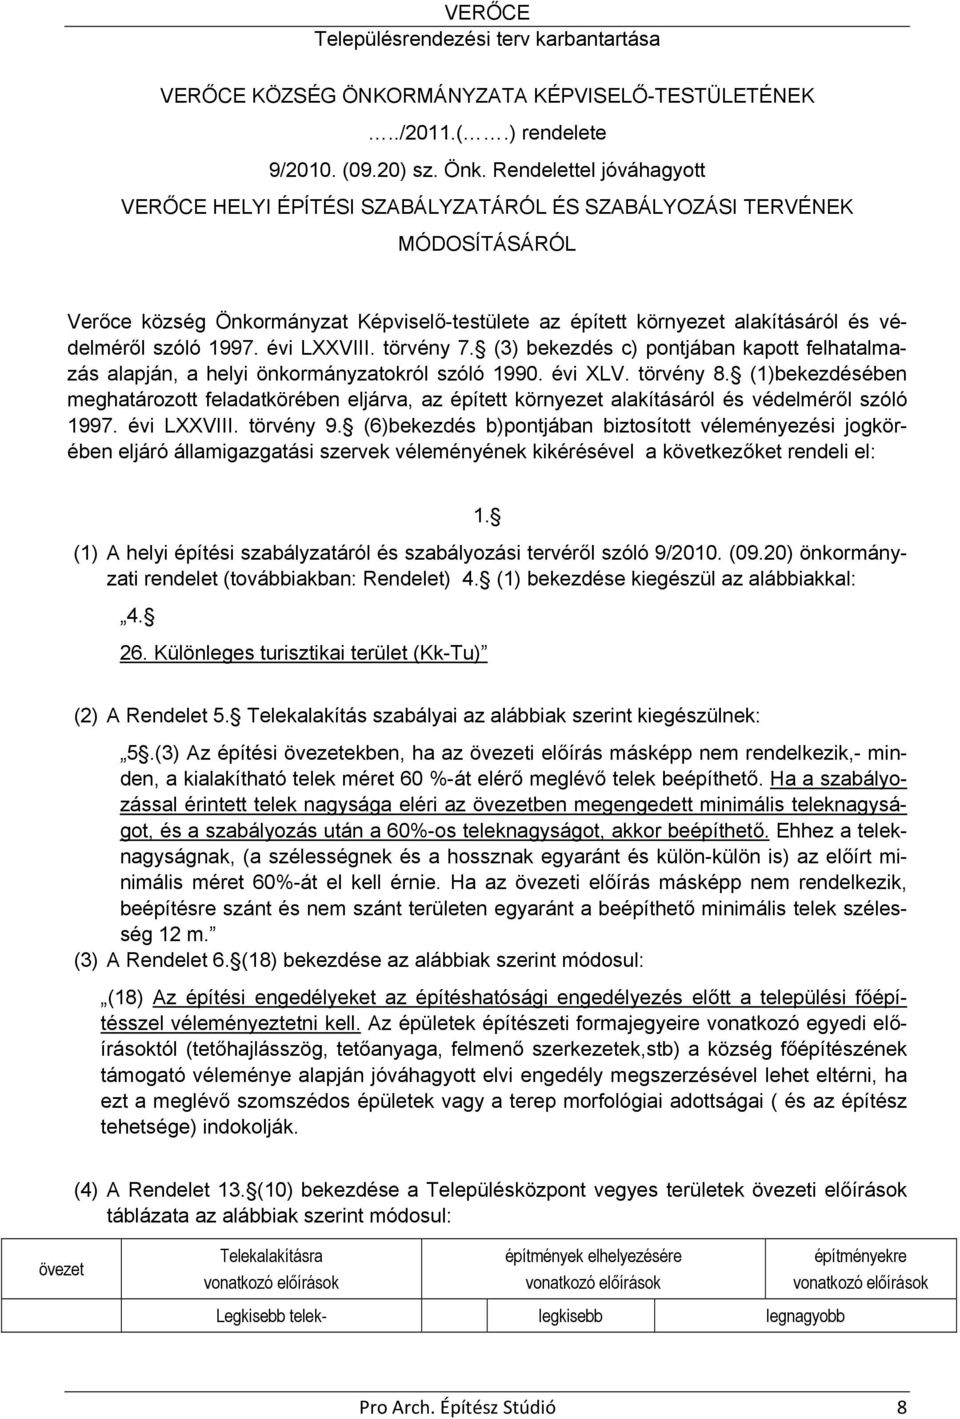 1997. évi LXXVIII. törvény 7. (3) bekezdés c) pontjában kapott felhatalmazás alapján, a helyi önkormányzatokról szóló 1990. évi XLV. törvény 8.